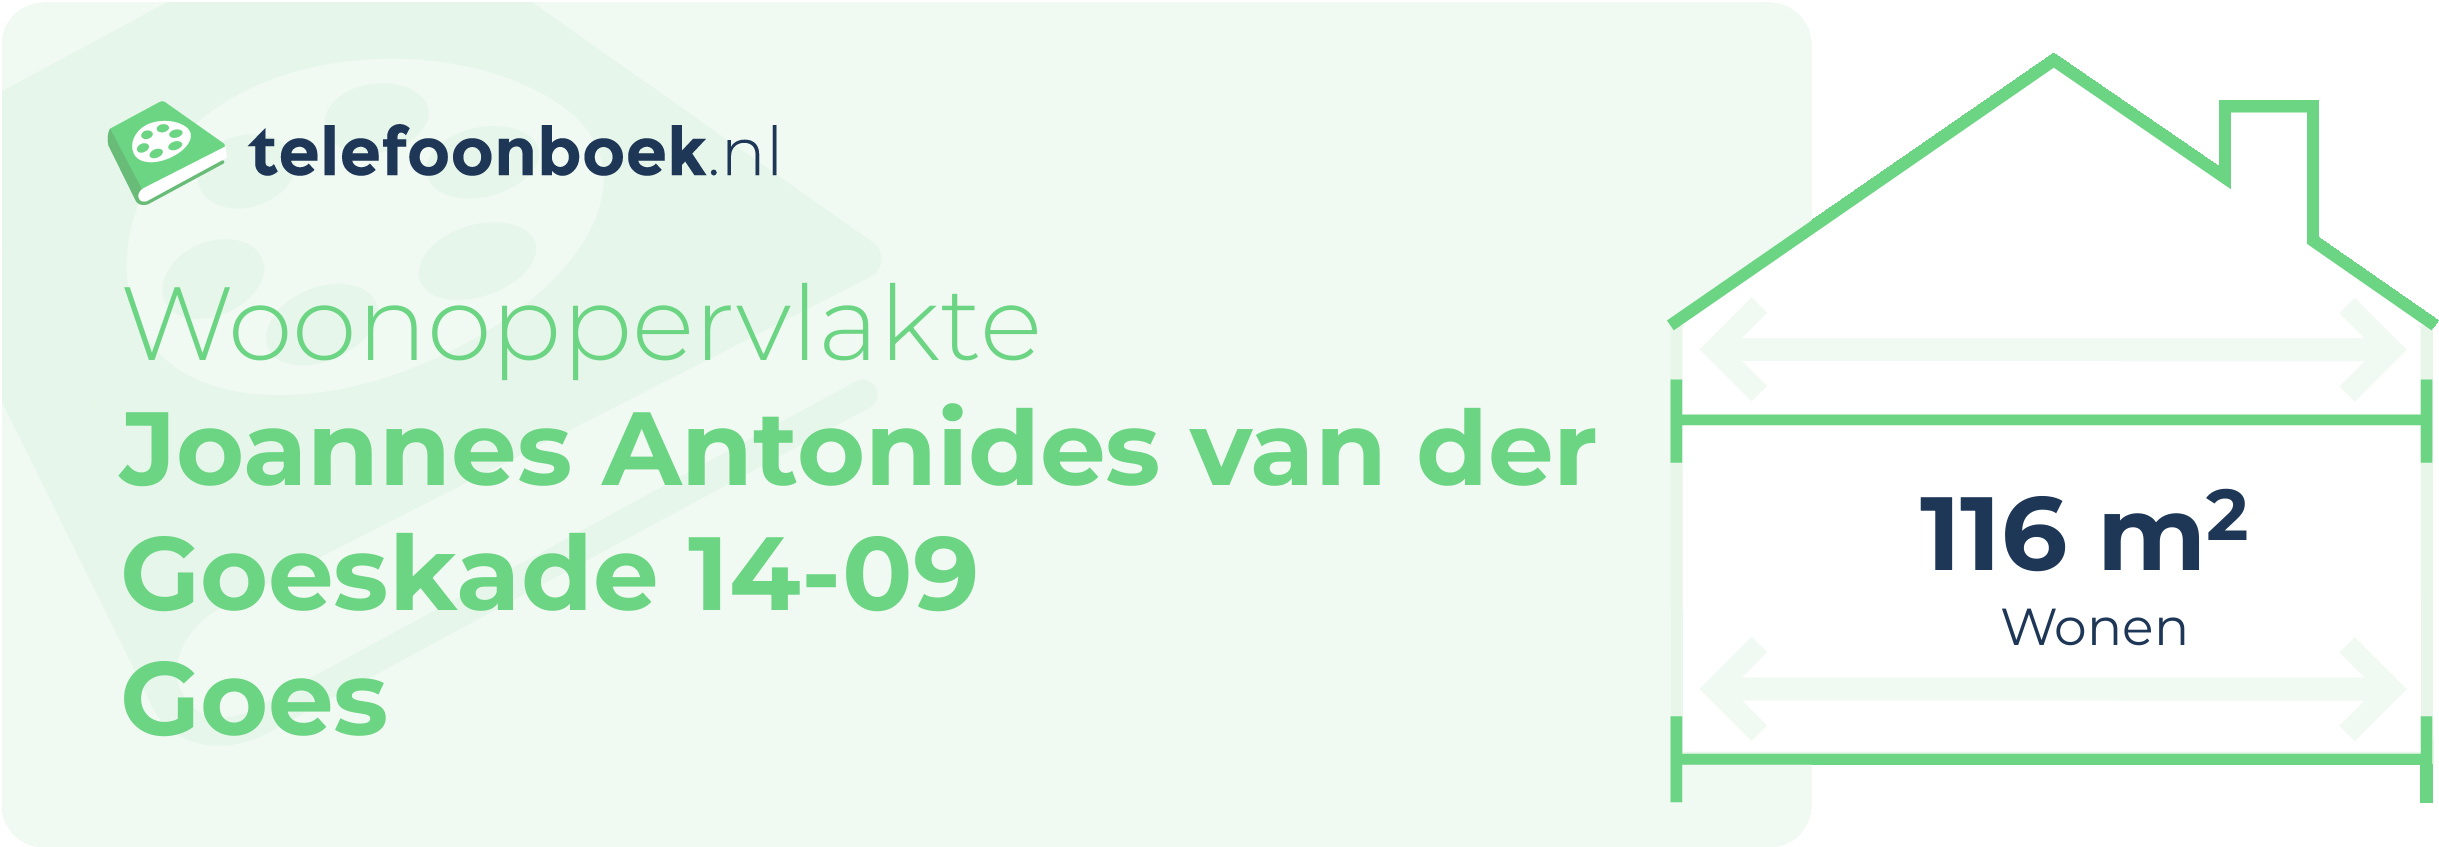 Woonoppervlakte Joannes Antonides Van Der Goeskade 14-09 Goes